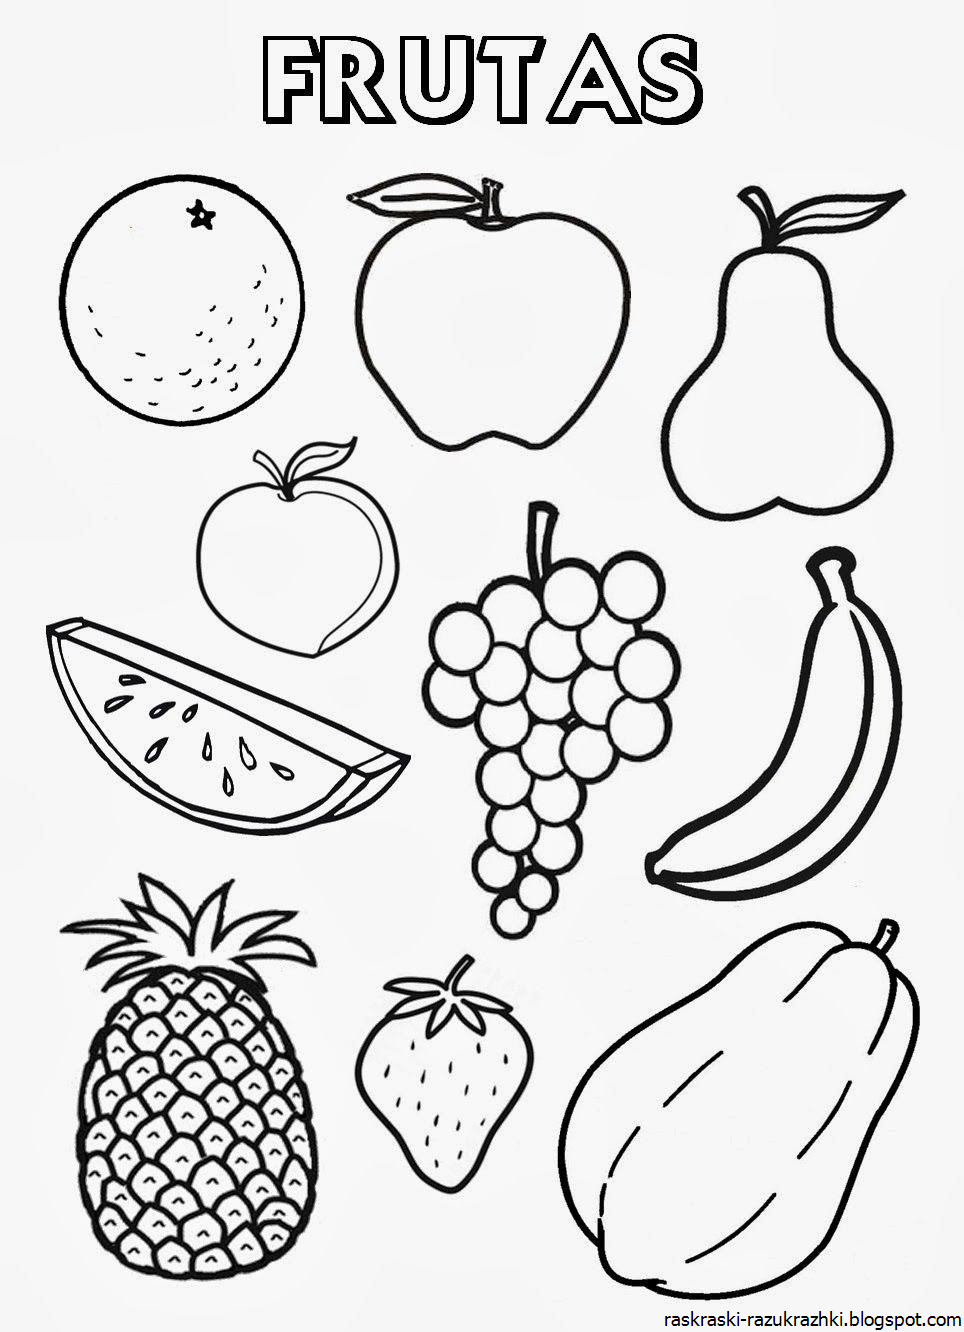 Картинки фрукты для детей, карточки домана скачатьamelica